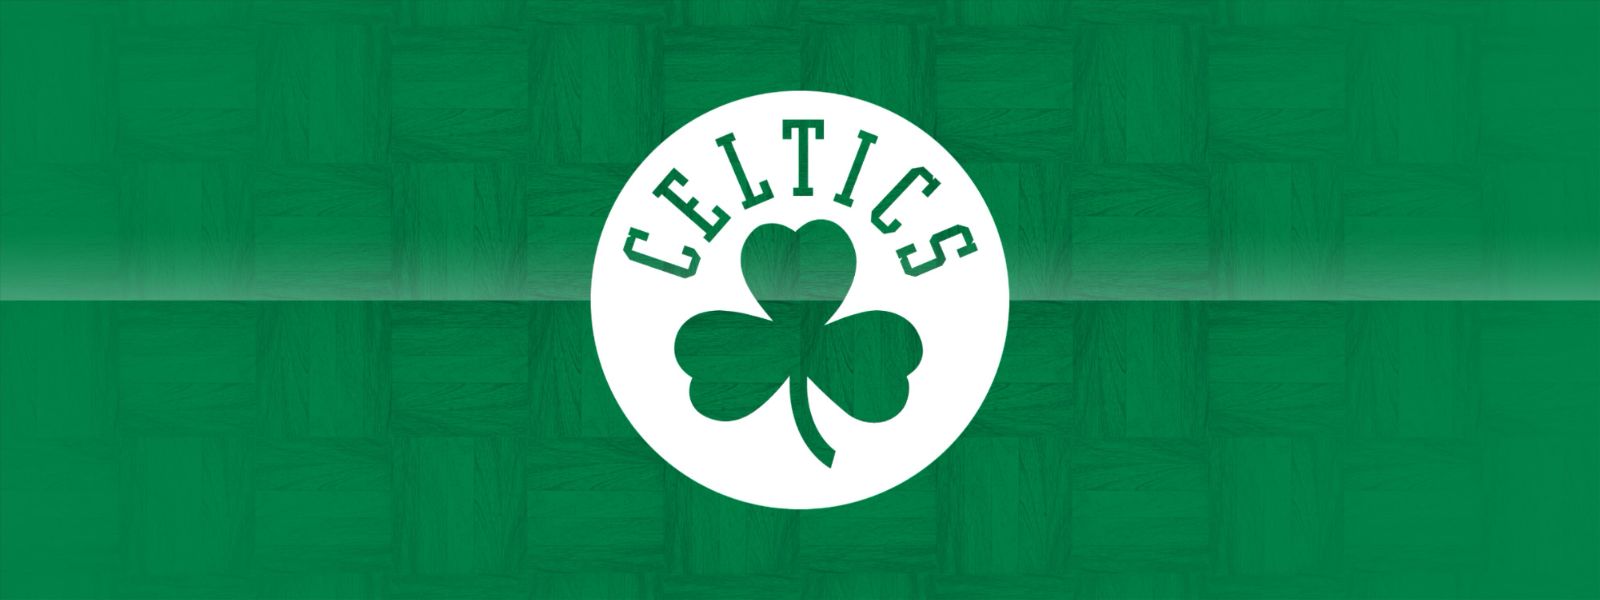 Celtics vs. Cavaliers